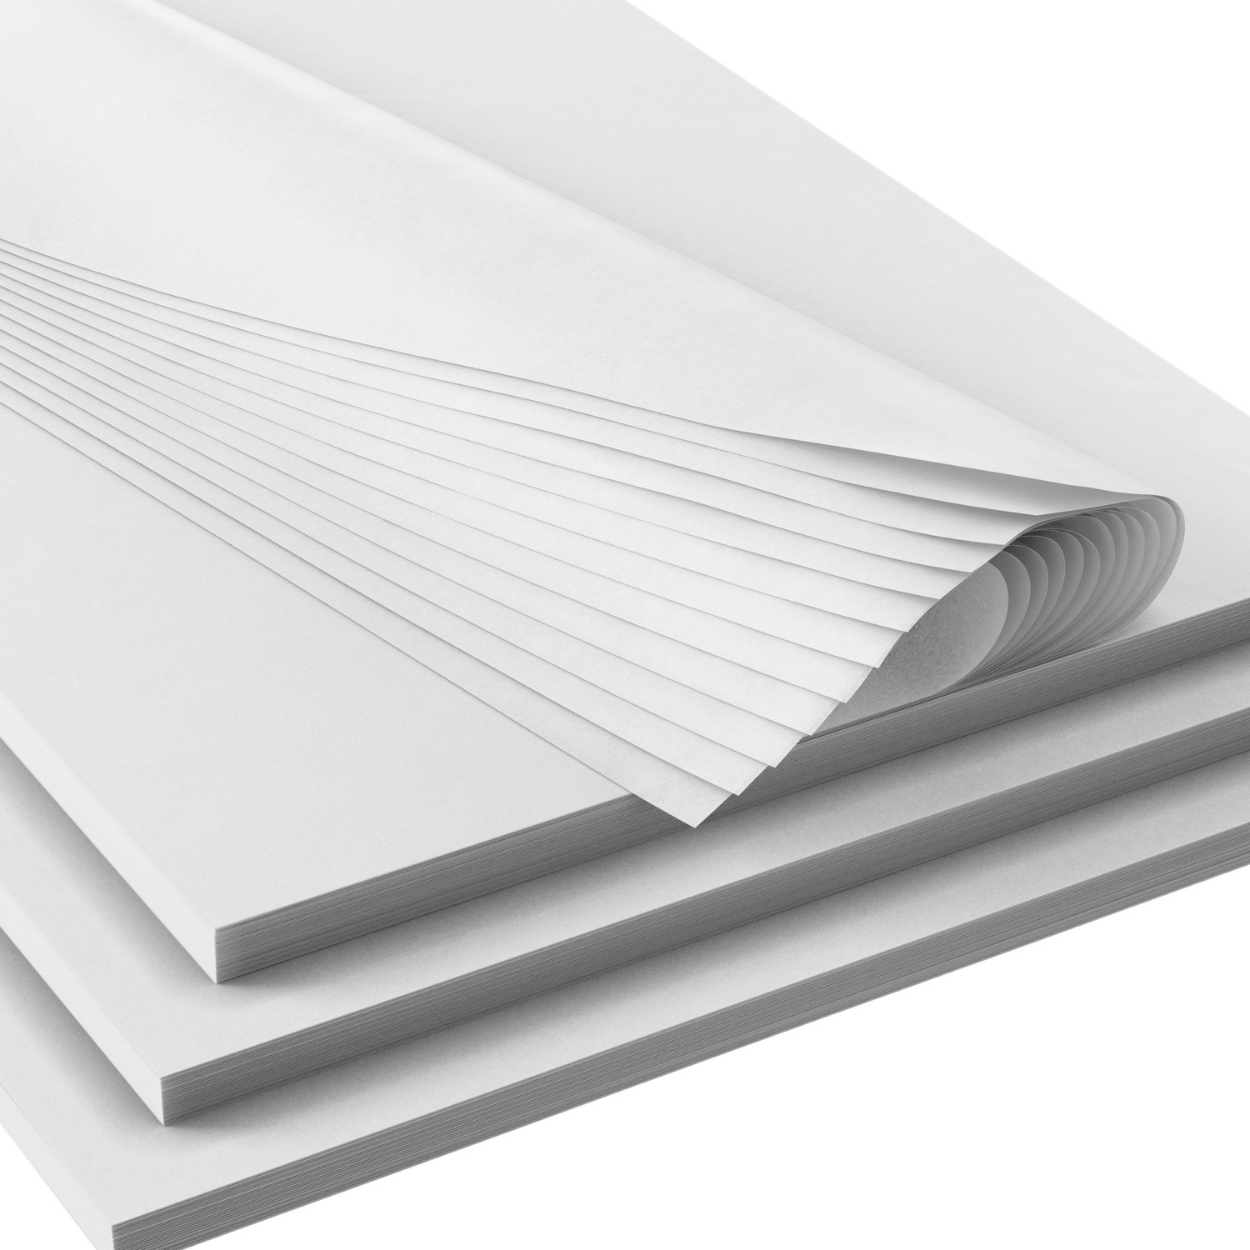 White Sparkle Bulk Premium Tissue Paper - 200 Sheets, 20”x30” High Quality  Tissue Paper – BonBon Paper ™